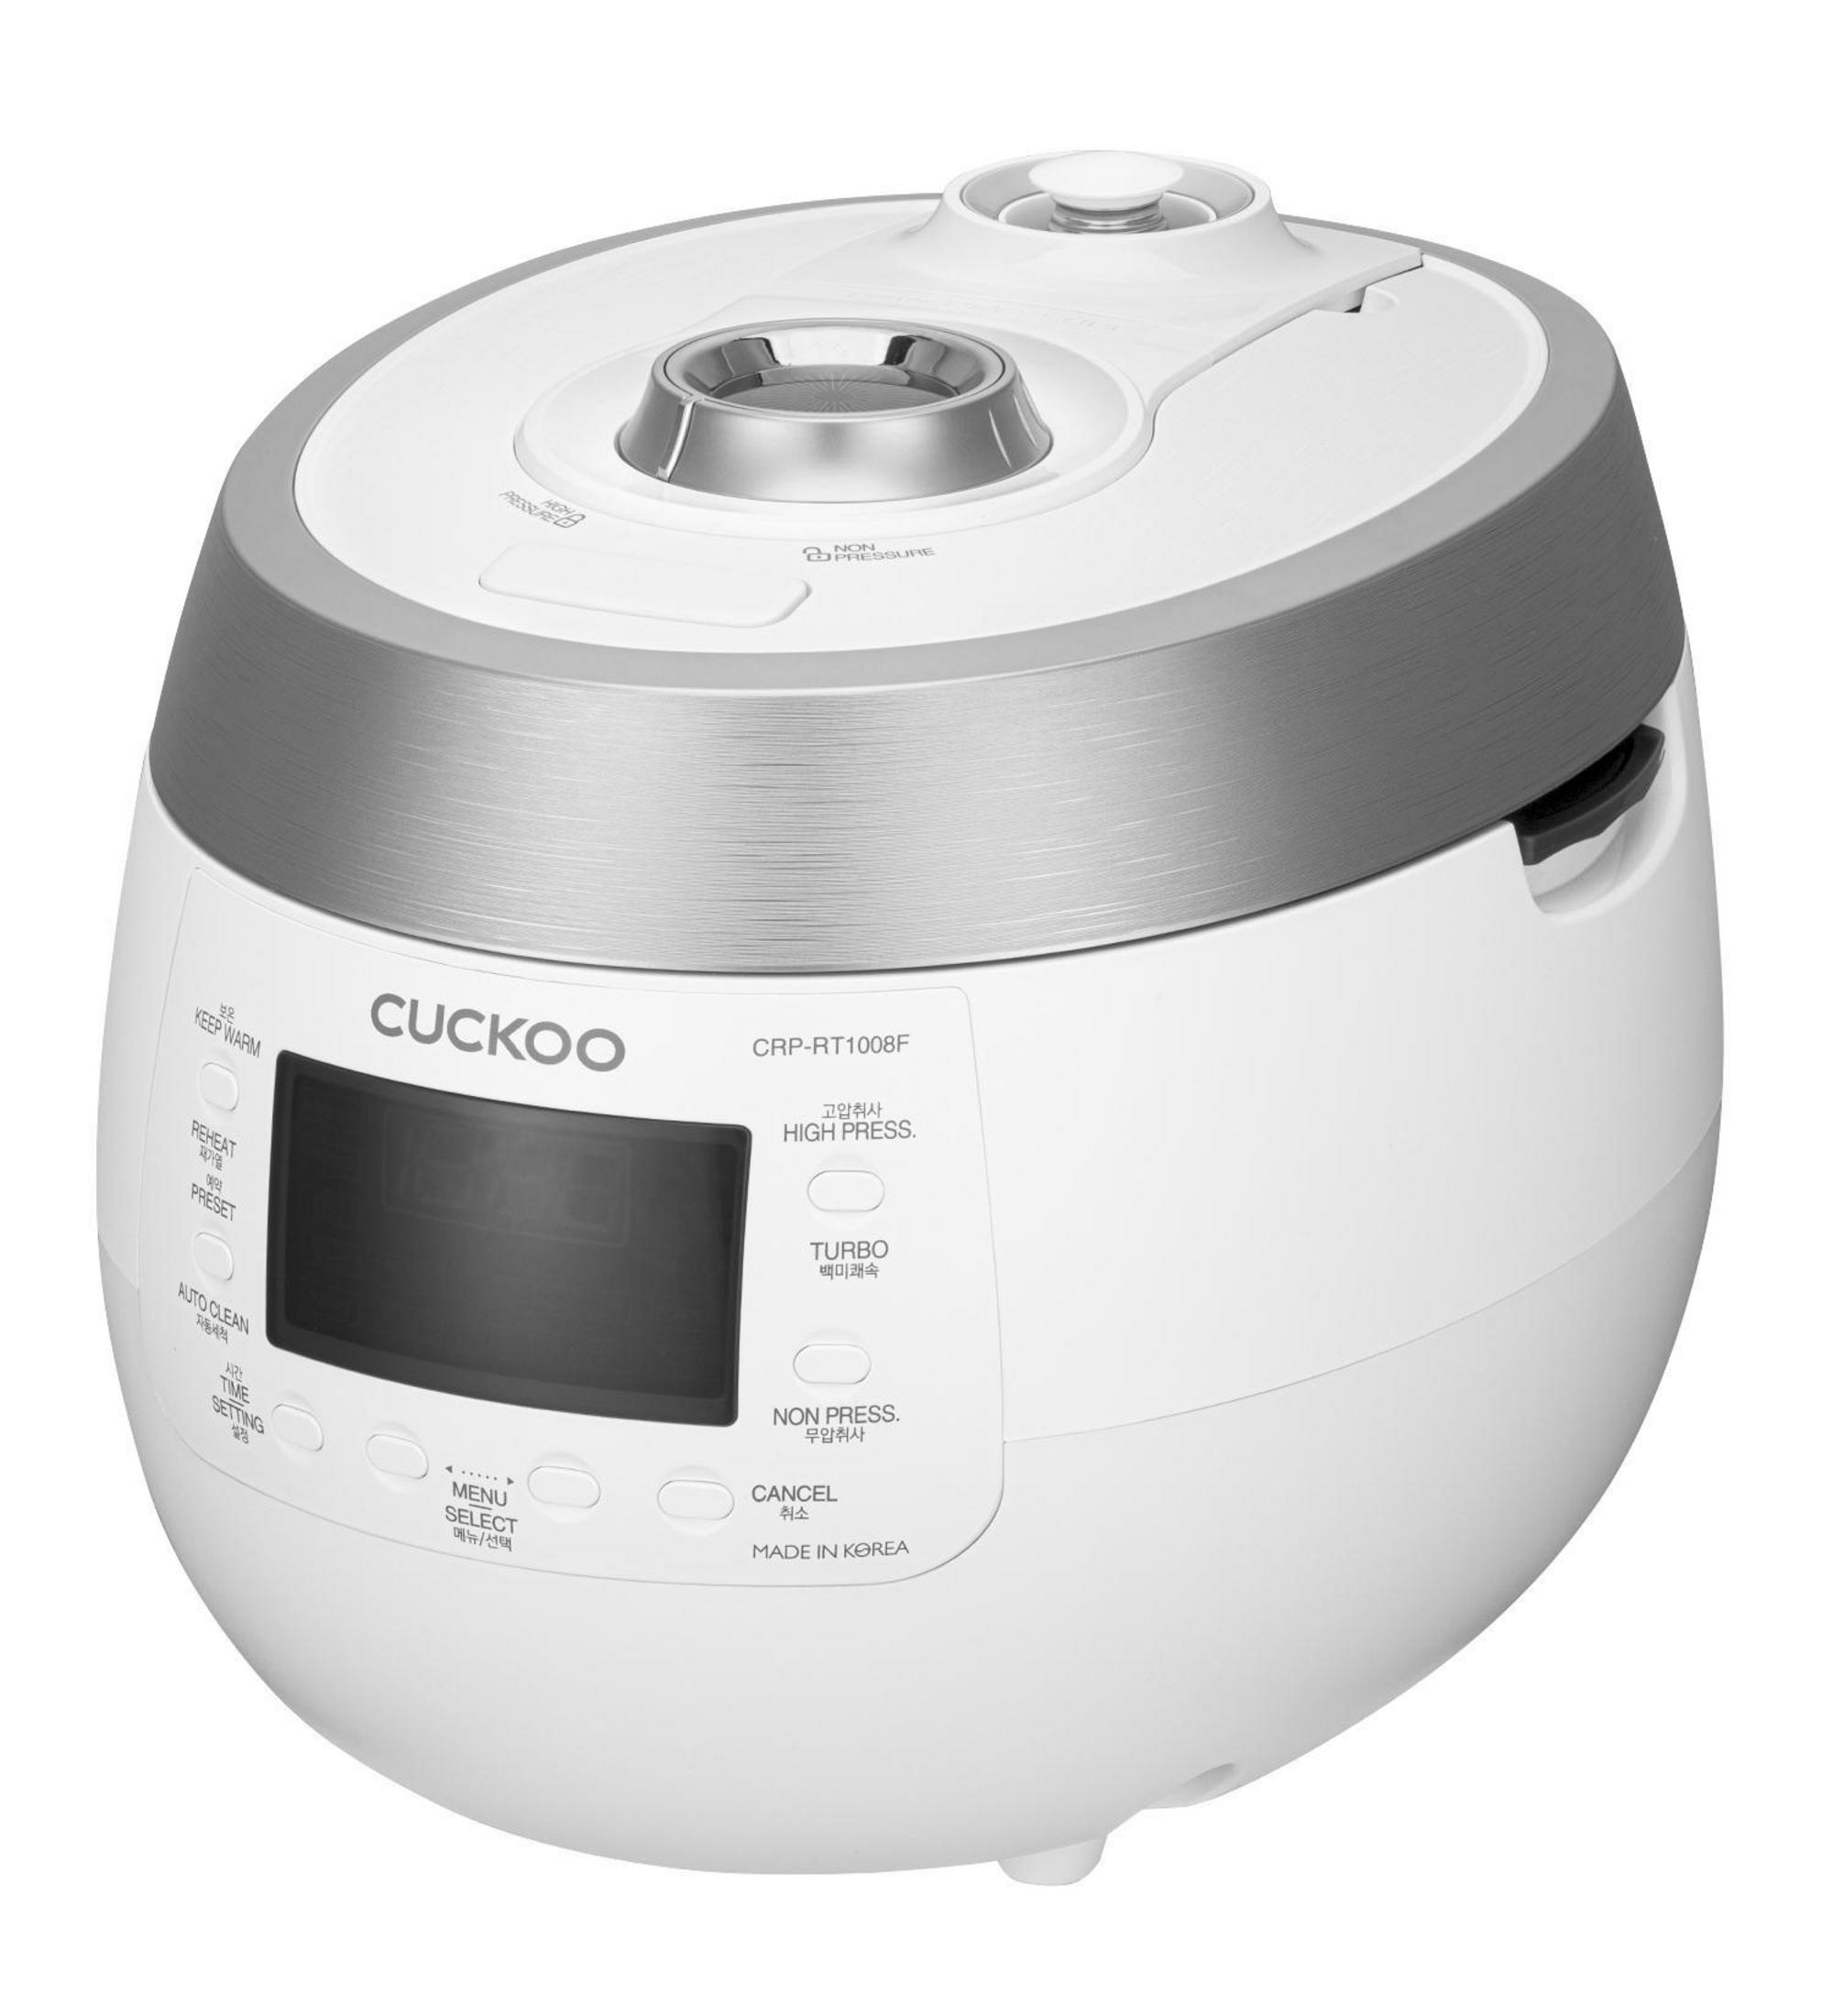 CUCKOO (1150 Watt, Reiskocher CRP-RT1008F Weiß)